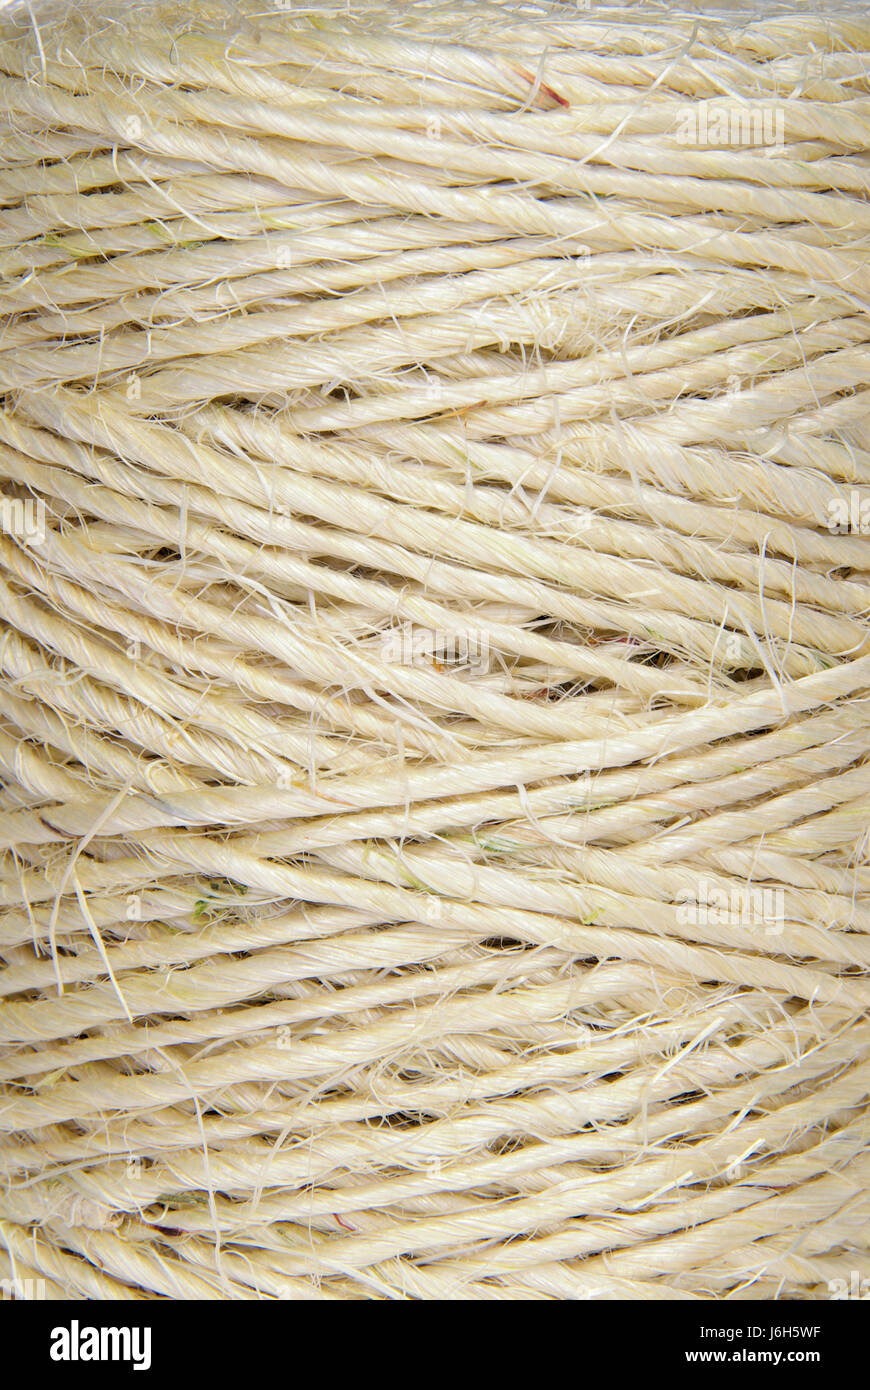 Cable de hilo hilos clew cuerdas cadena cuerda material anestésico de drogas adictivas Foto de stock